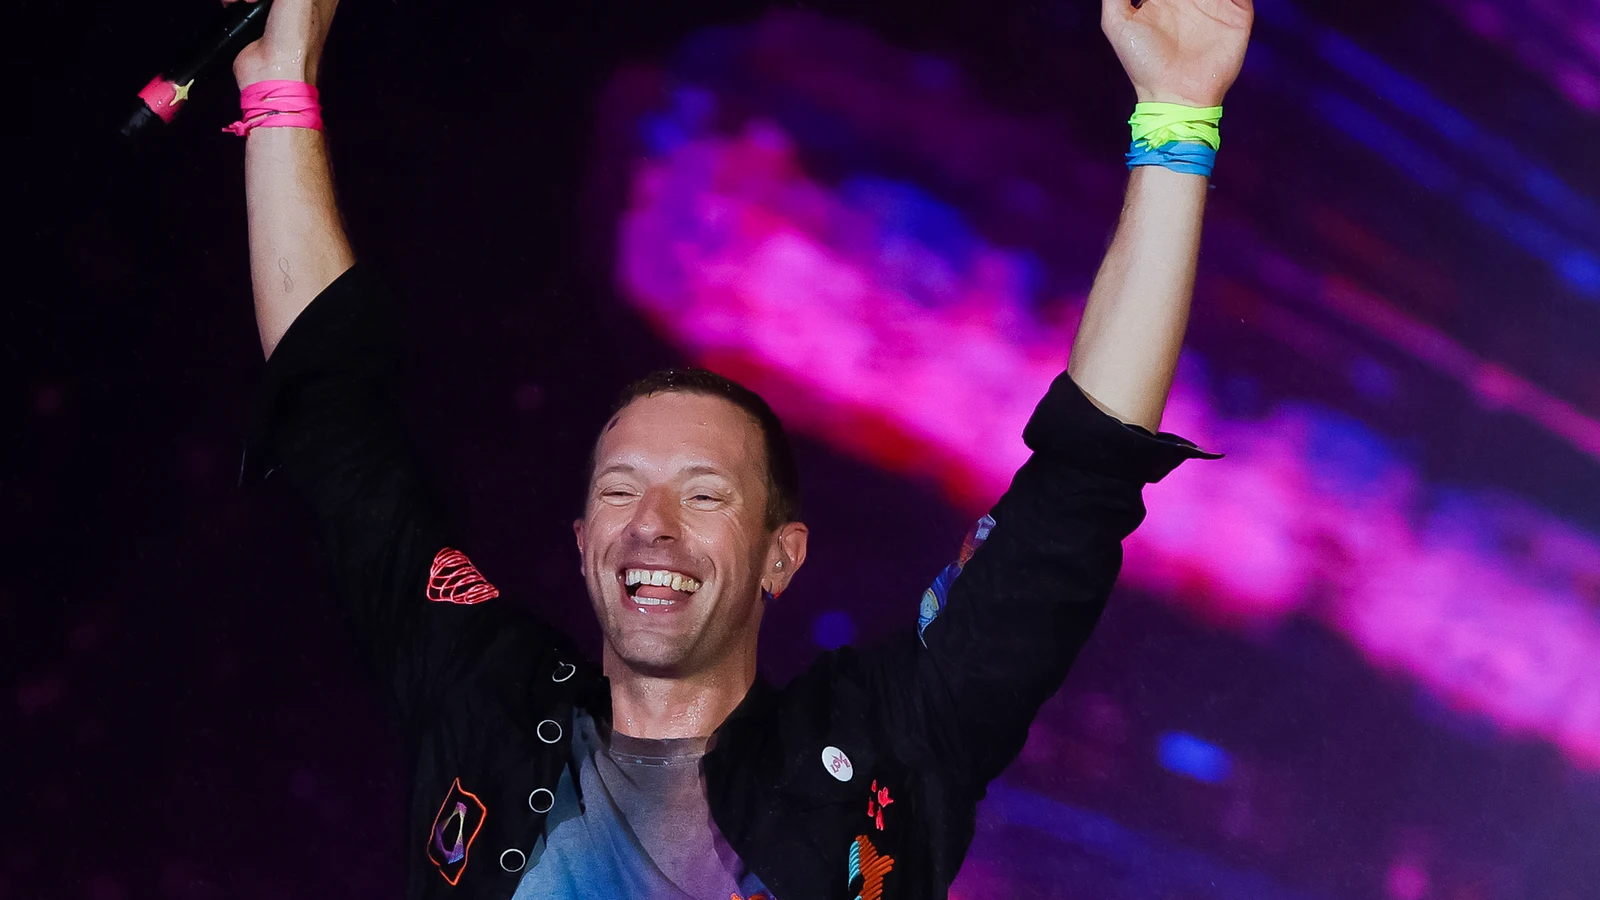 Hasta mi última fecha de conocimiento en septiembre de 2021, no tengo información sobre un álbum de Coldplay titulado “Moon Music”. Es posible que esta información sea más reciente y esté fuera de mi base de datos actualizada. Te recomiendo verificar las fuentes de noticias o el sitio web oficial de Coldplay para obtener información actualizada sobre el lanzamiento de su próximo álbum.